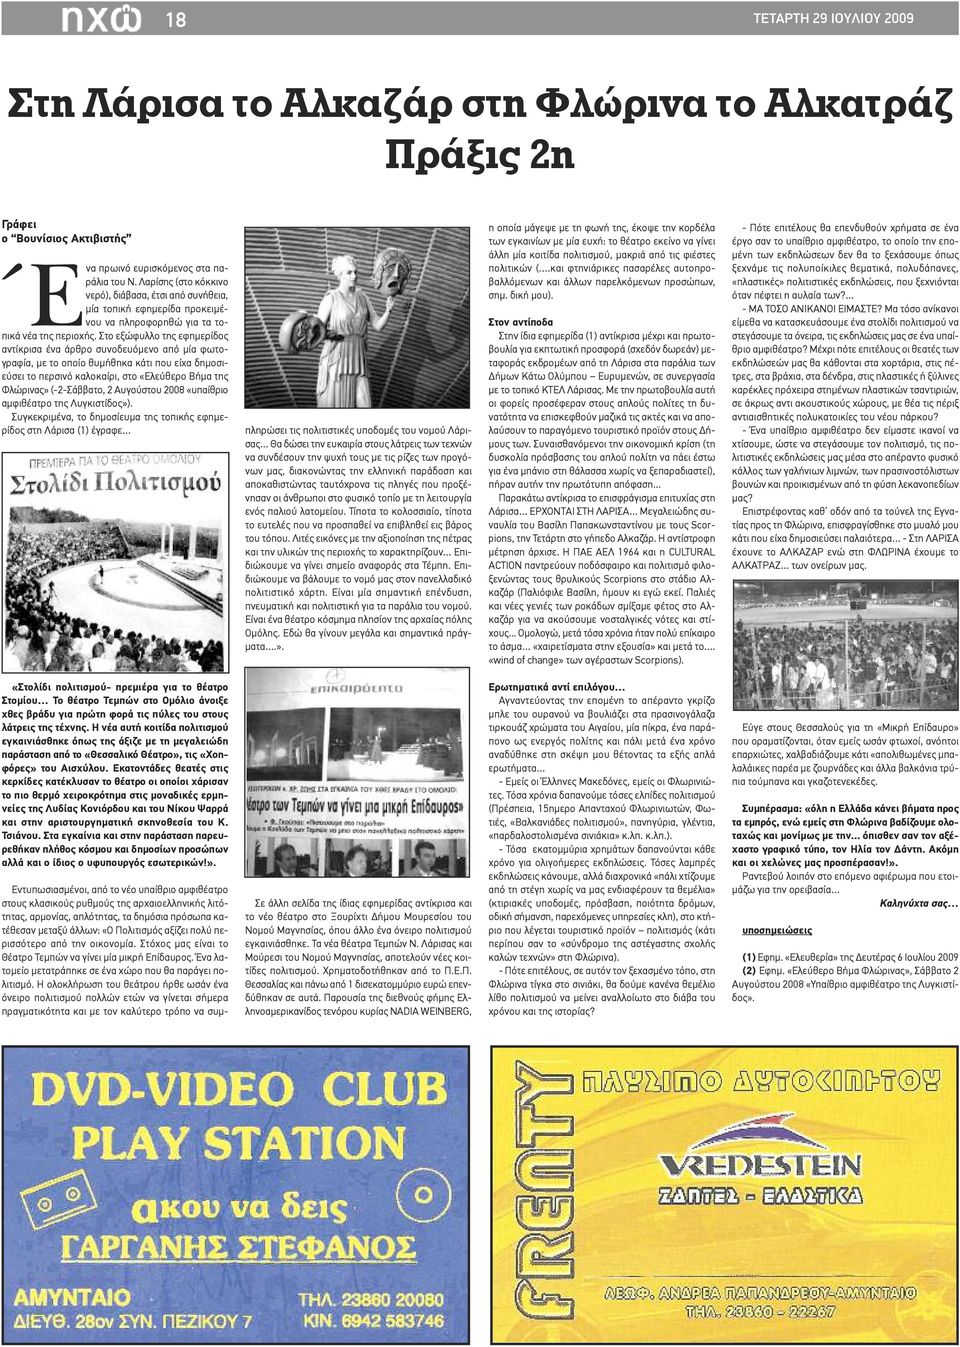 Στο εξώφυλλο της εφημερίδος αντίκρισα ένα άρθρο συνοδευόμενο από μία φωτογραφία, με το οποίο θυμήθηκα κάτι που είχα δημοσιεύσει το περσινό καλοκαίρι, στο «Ελεύθερο Βήμα της Φλώρινας» (-2-Σάββατο, 2